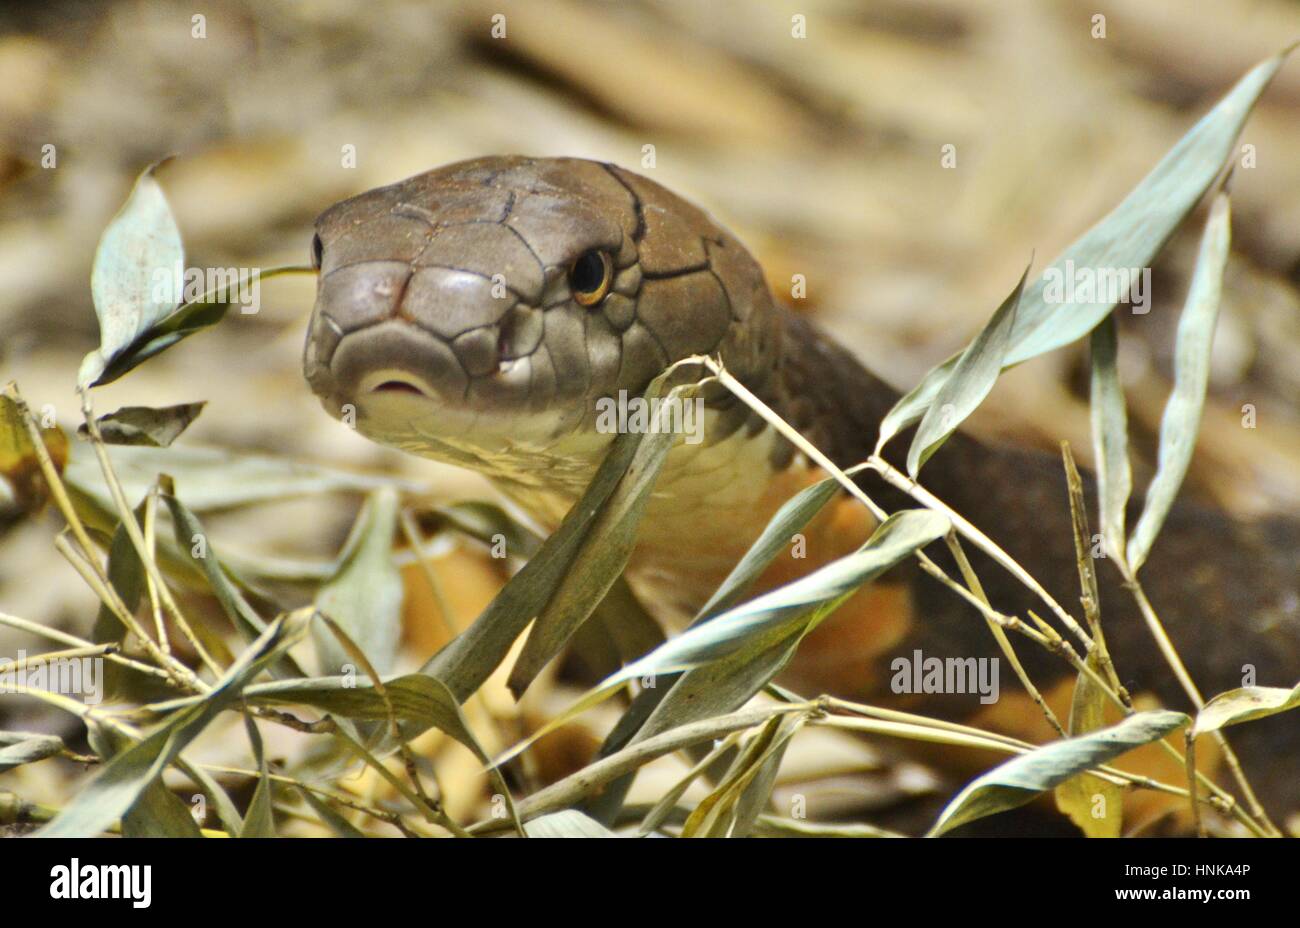 Königskobra (Ophiophagus Hannah), eine giftige Schlange, die ursprünglich aus Südasien. Stockfoto